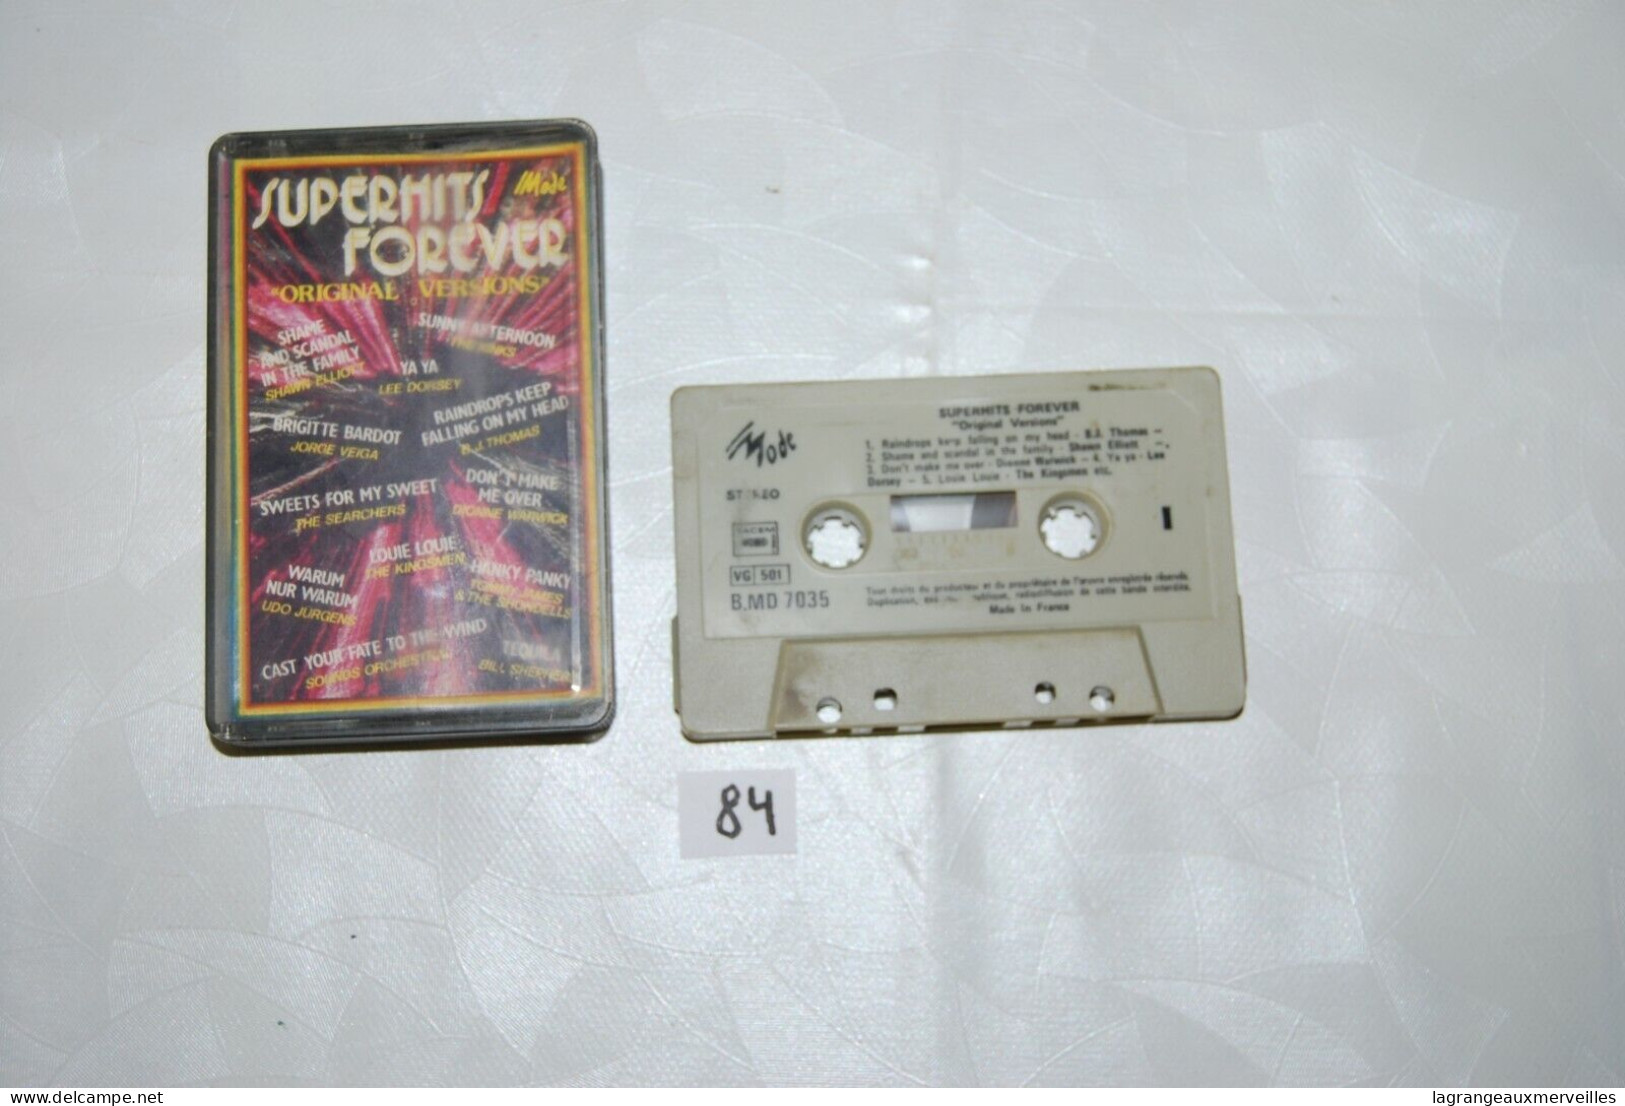 C84 K7 Cassette Audio - Super Hits Forever - Cassette Beta